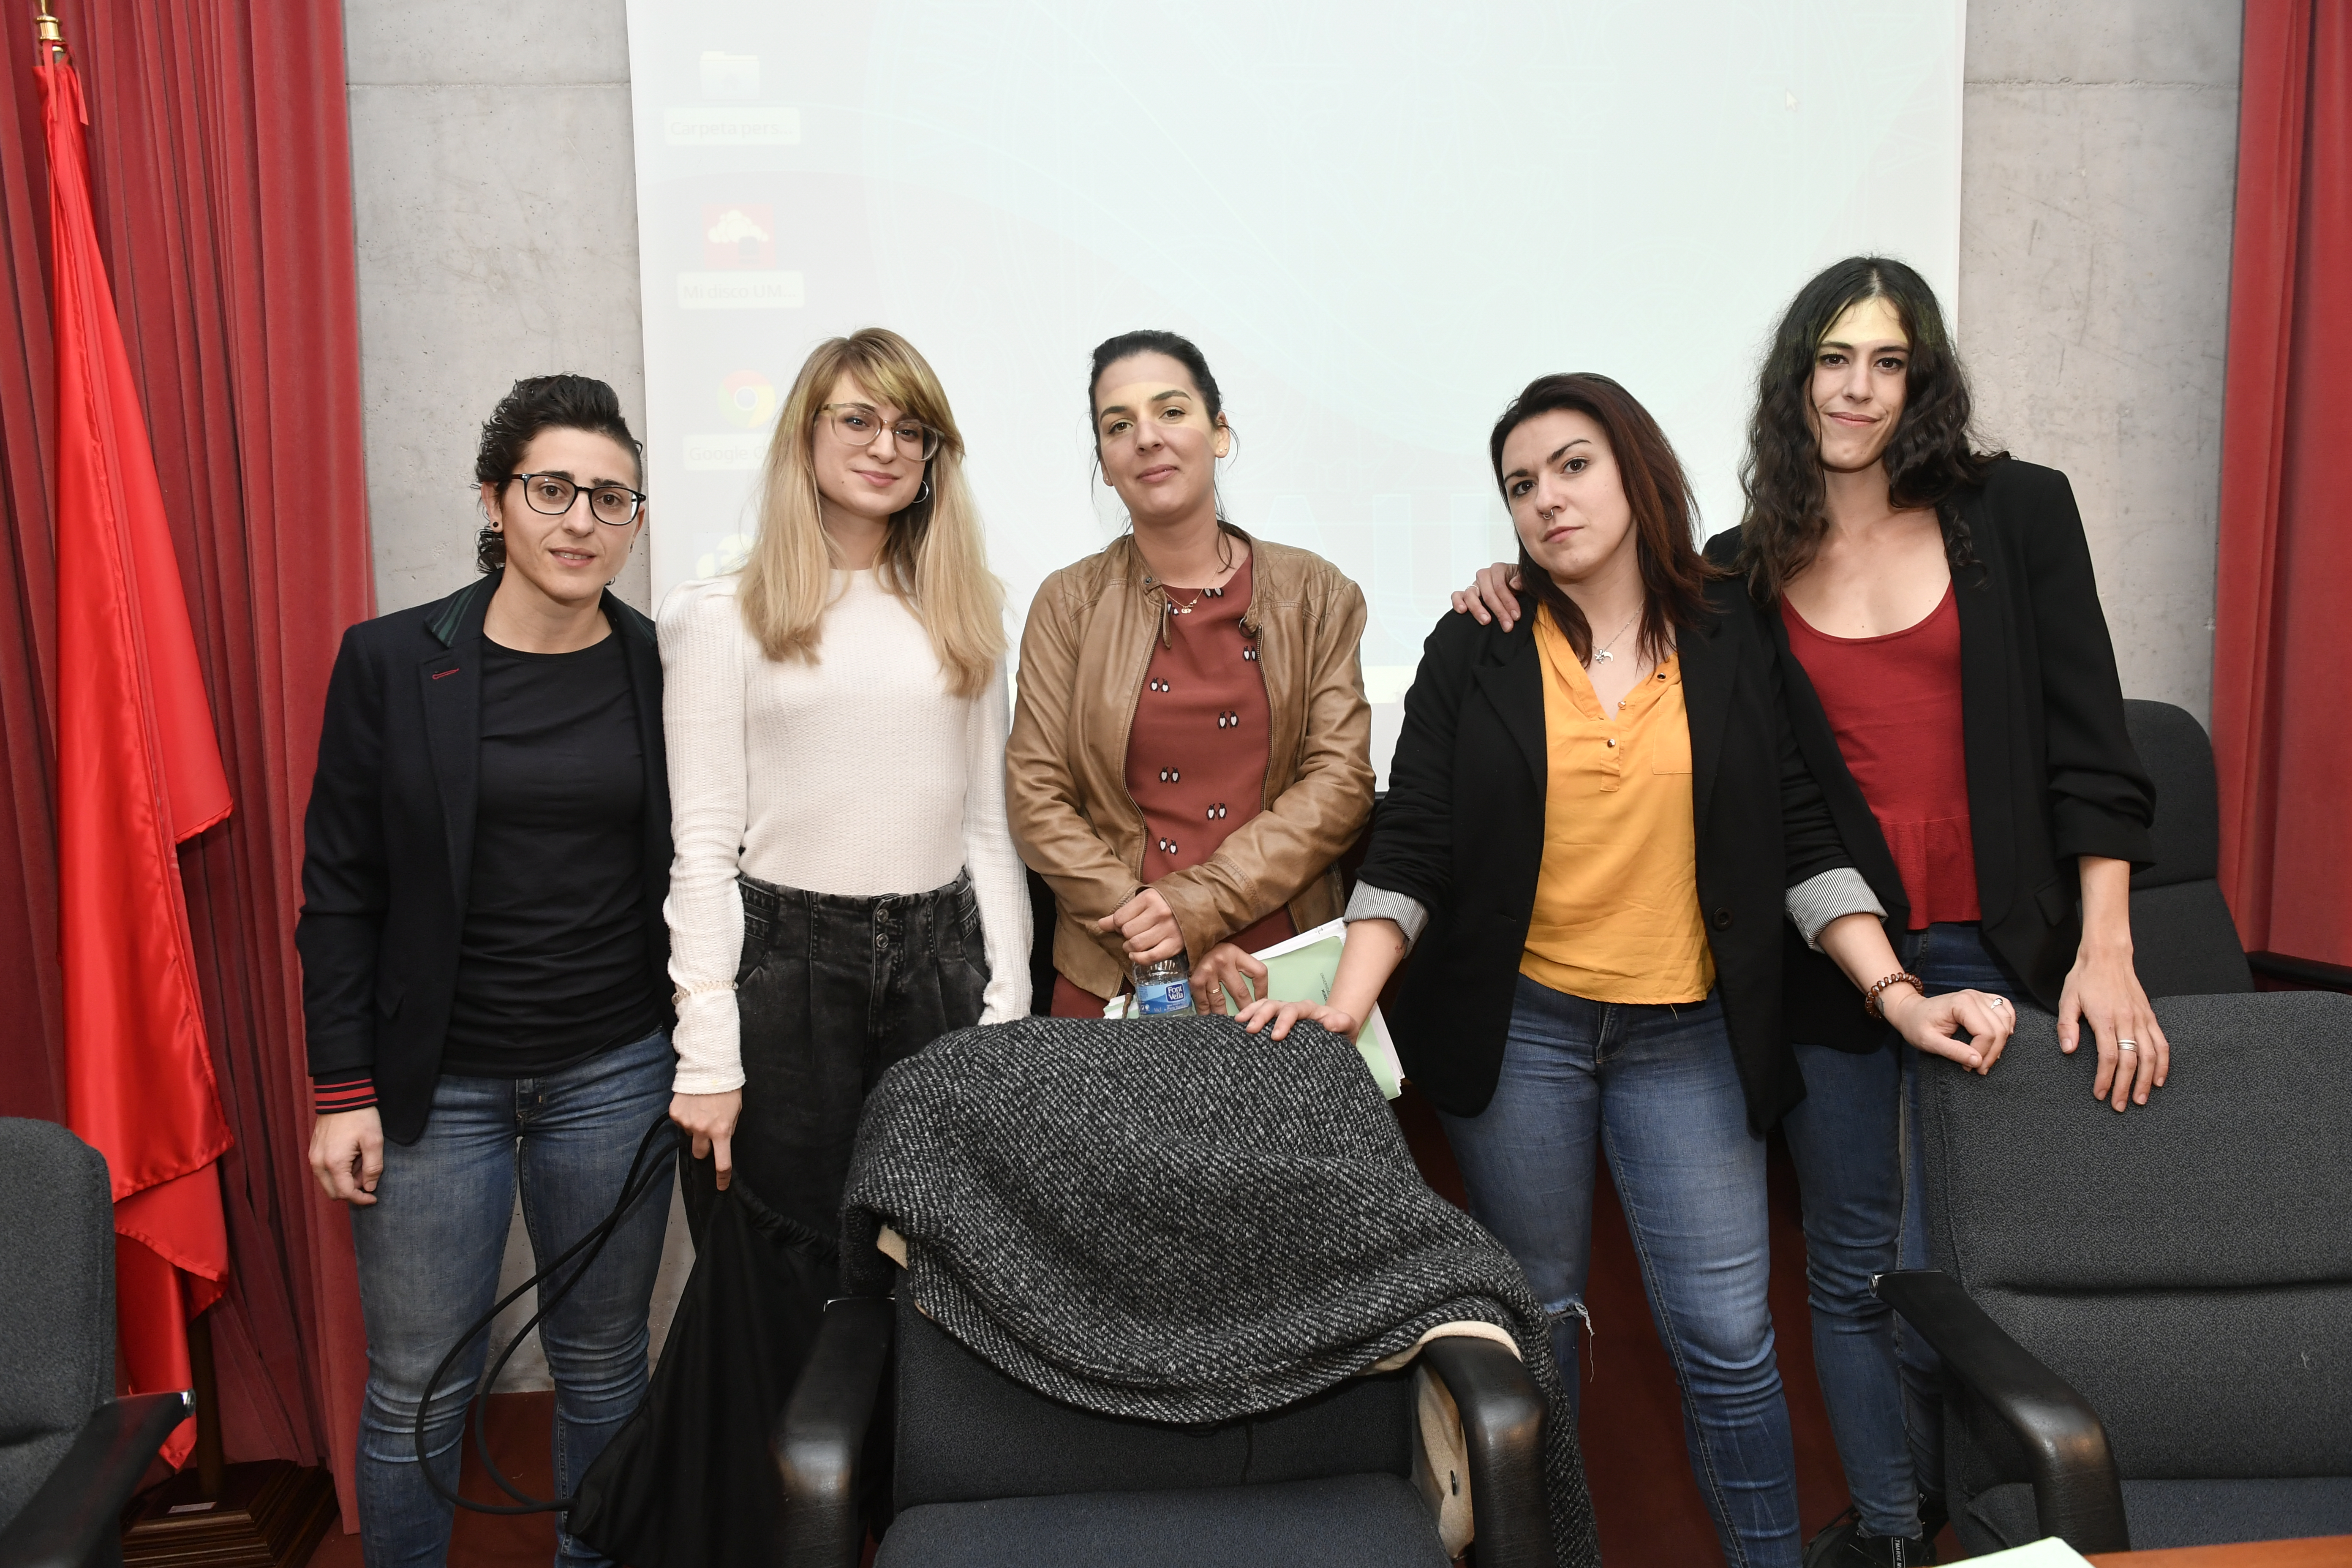 La Universidad de Murcia acoge una mesa redonda sobre prostitución y derechos humanos